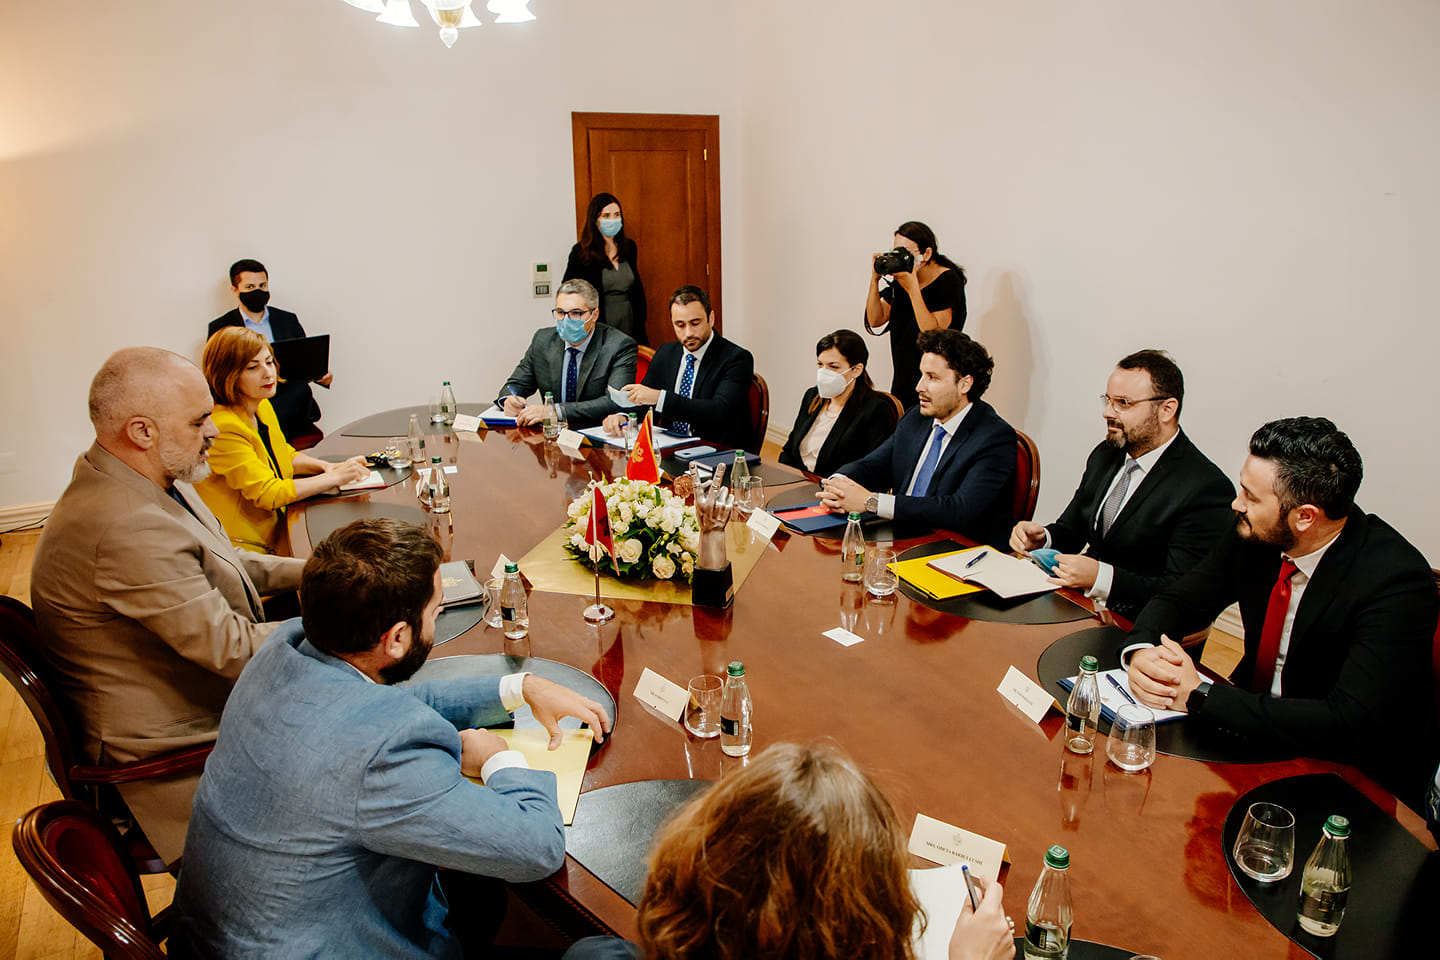 Zv.kryeministri i Malit të Zi Dritan Abazoviq qëndroi për vizitë zyrtare në Shqipëri